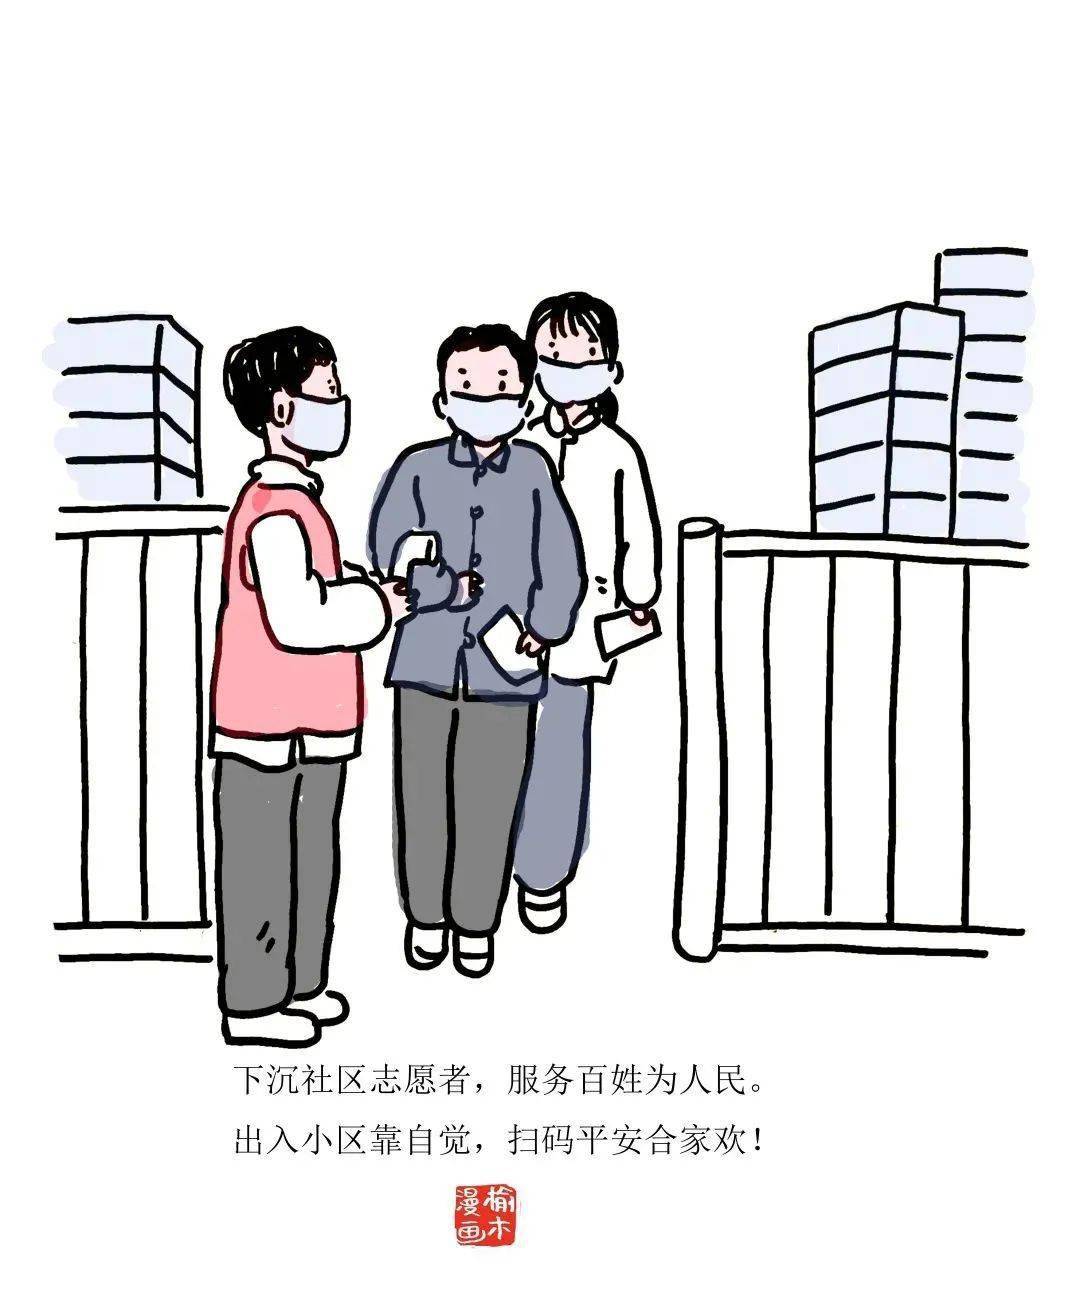 邯郸籍漫画家手绘抗疫漫画,为家乡加油!